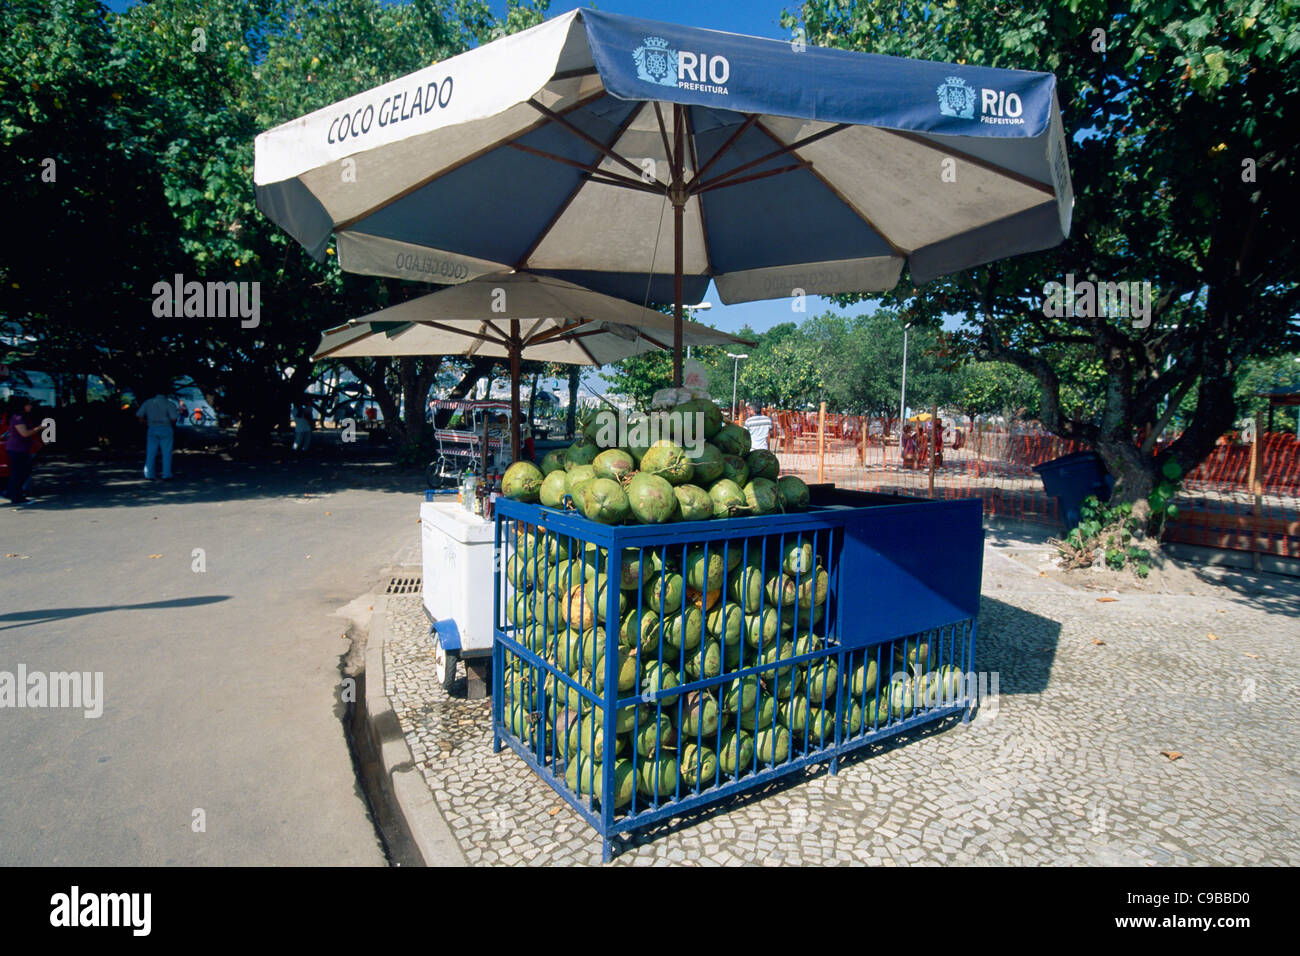 Coconut Vendor in a Park, Lagoa, Rio de Janeiro, Brazil Stock Photo